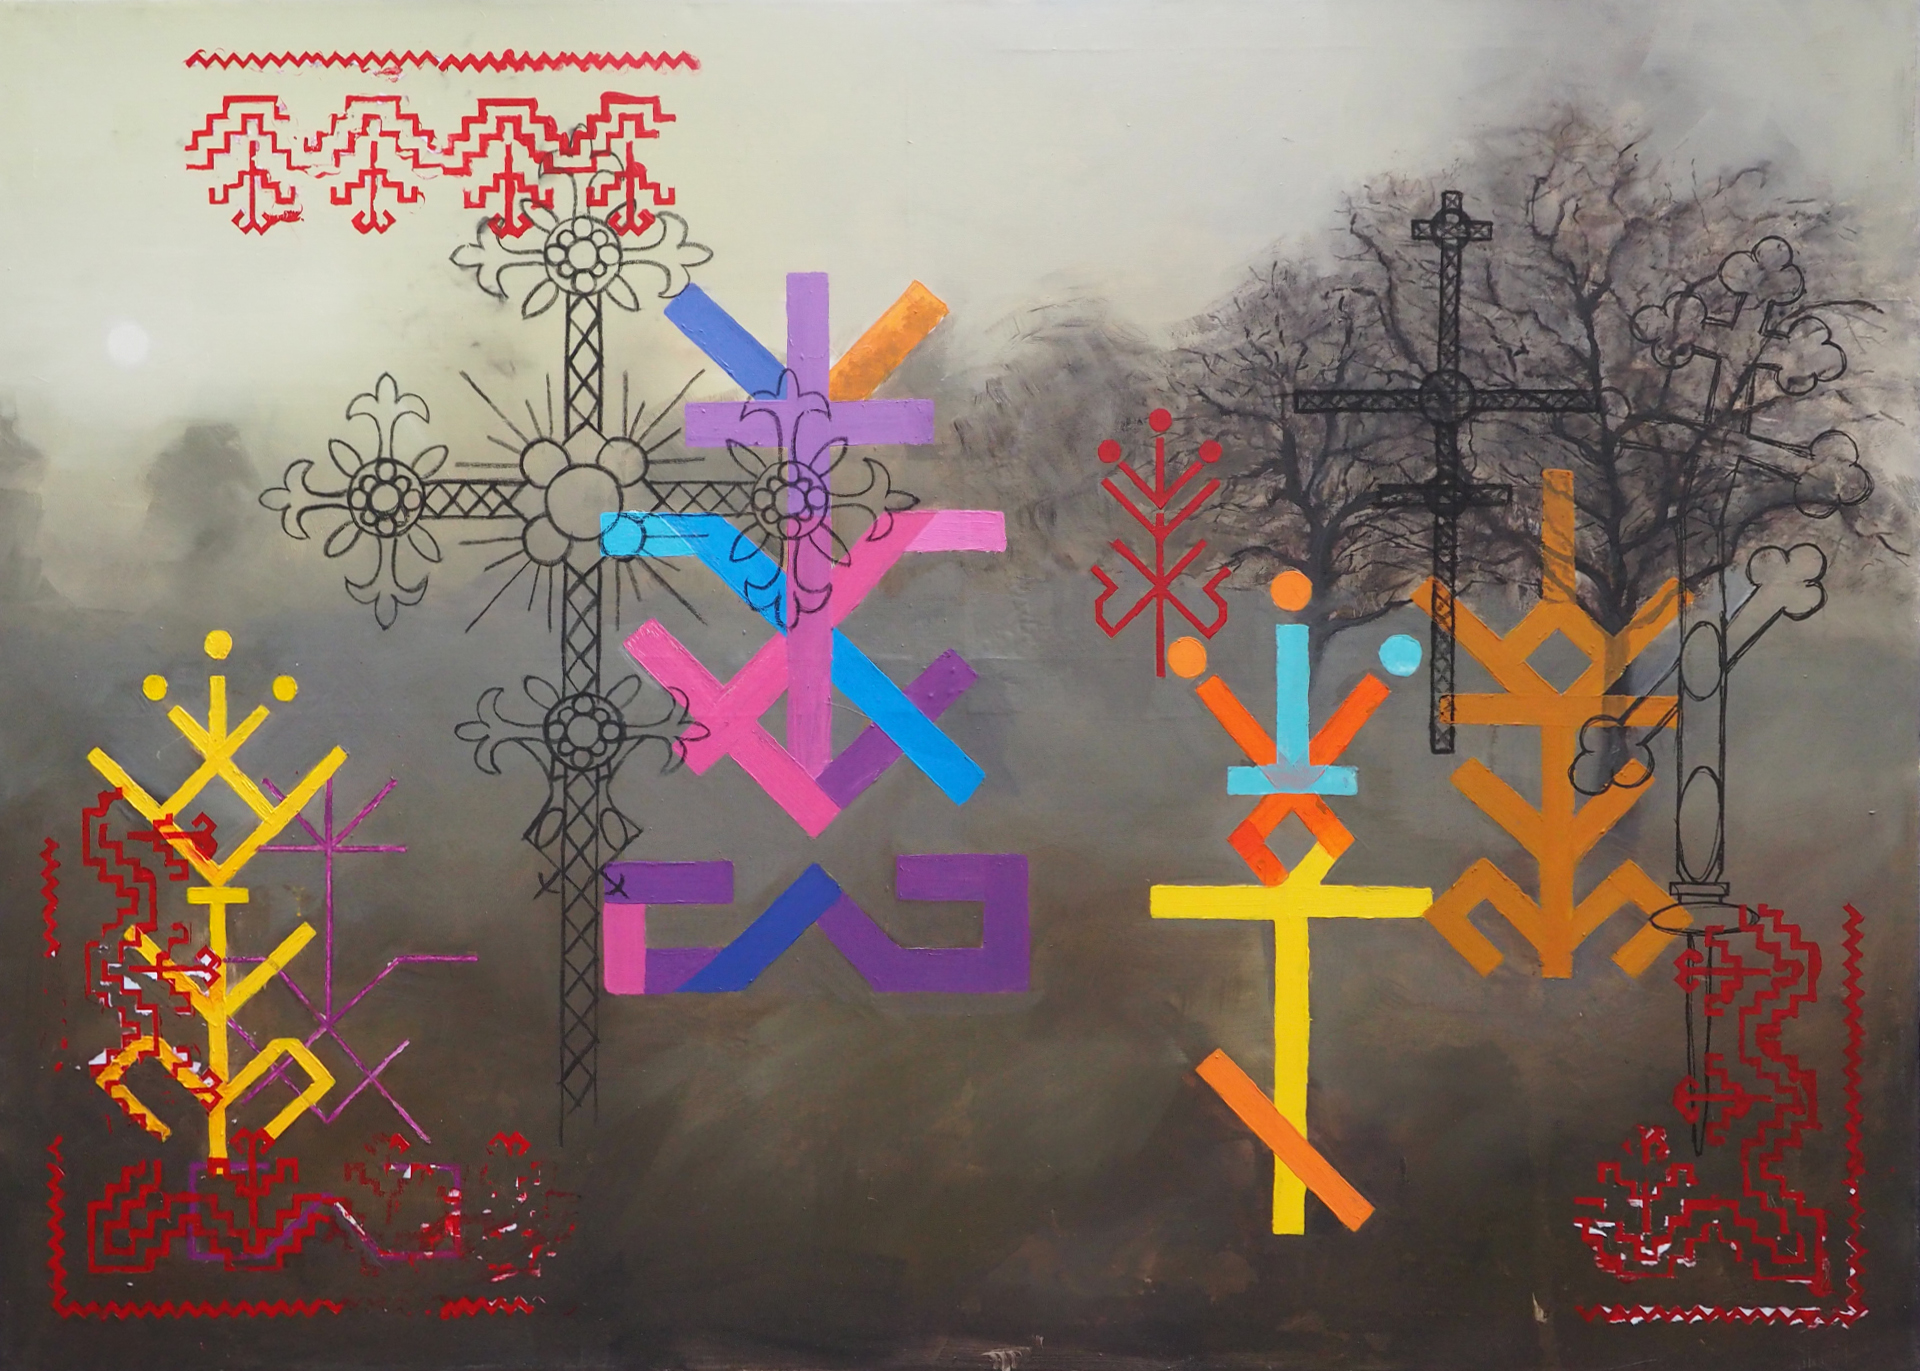 Zamglony pejzaż z czarnymi drzewami. Pejzaż stanowi tło obrazu. Na pierwszym planie znajdują się krzyże łemkowskie i bojkowskie. Krzyże przedstawione są graficznie. Mają żywe barwy. Trzy z nich są czarne. W trzech rogach znajduje się czerwony wzór geometryczny.